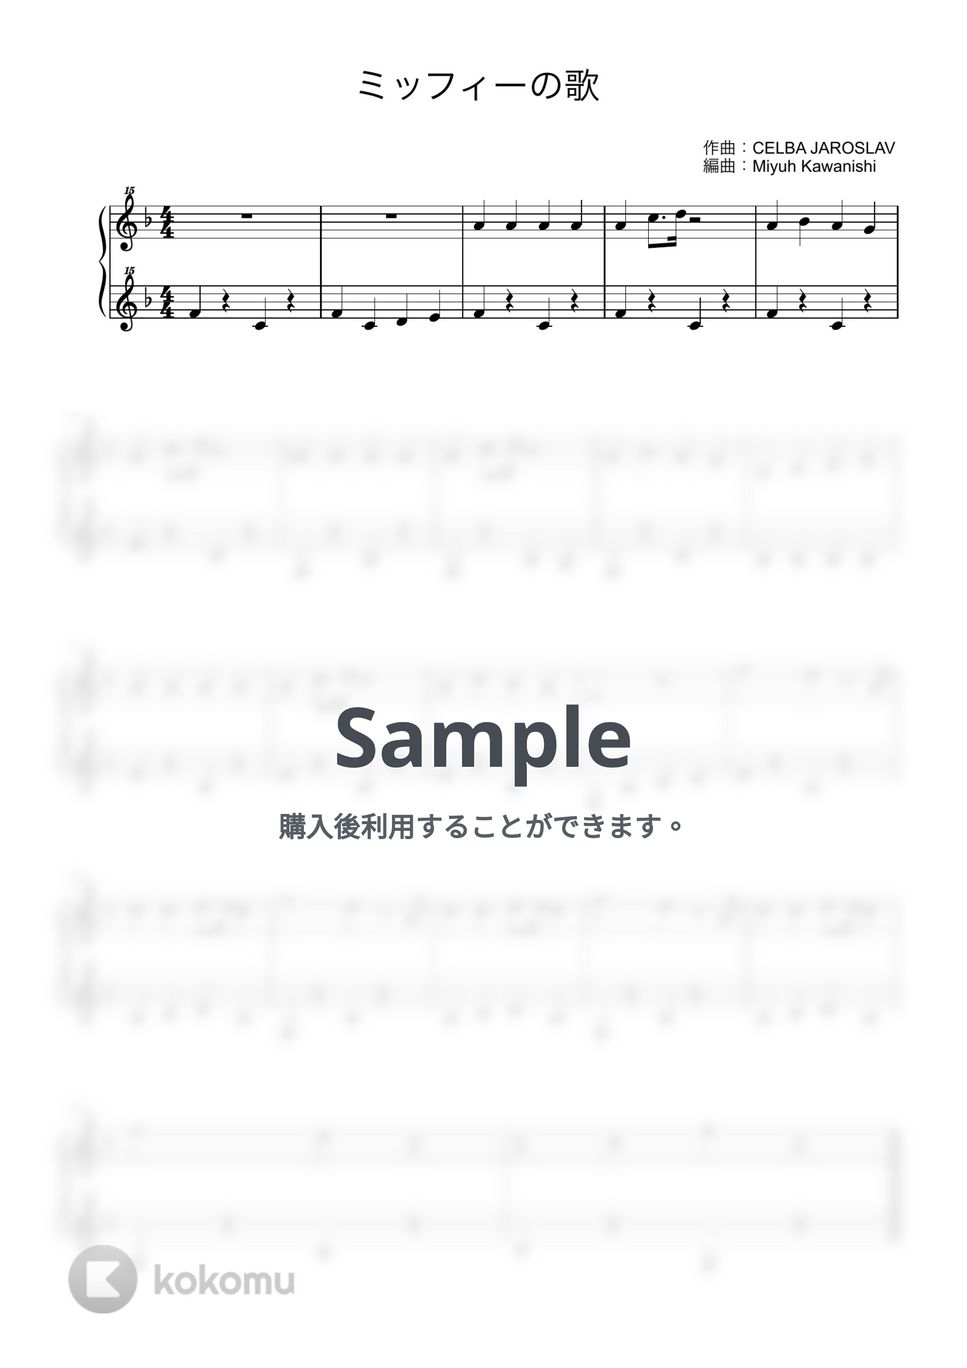 ミッフィーのうた (トイピアノ / 25鍵盤 / 童謡) 楽譜 by 川西 三裕